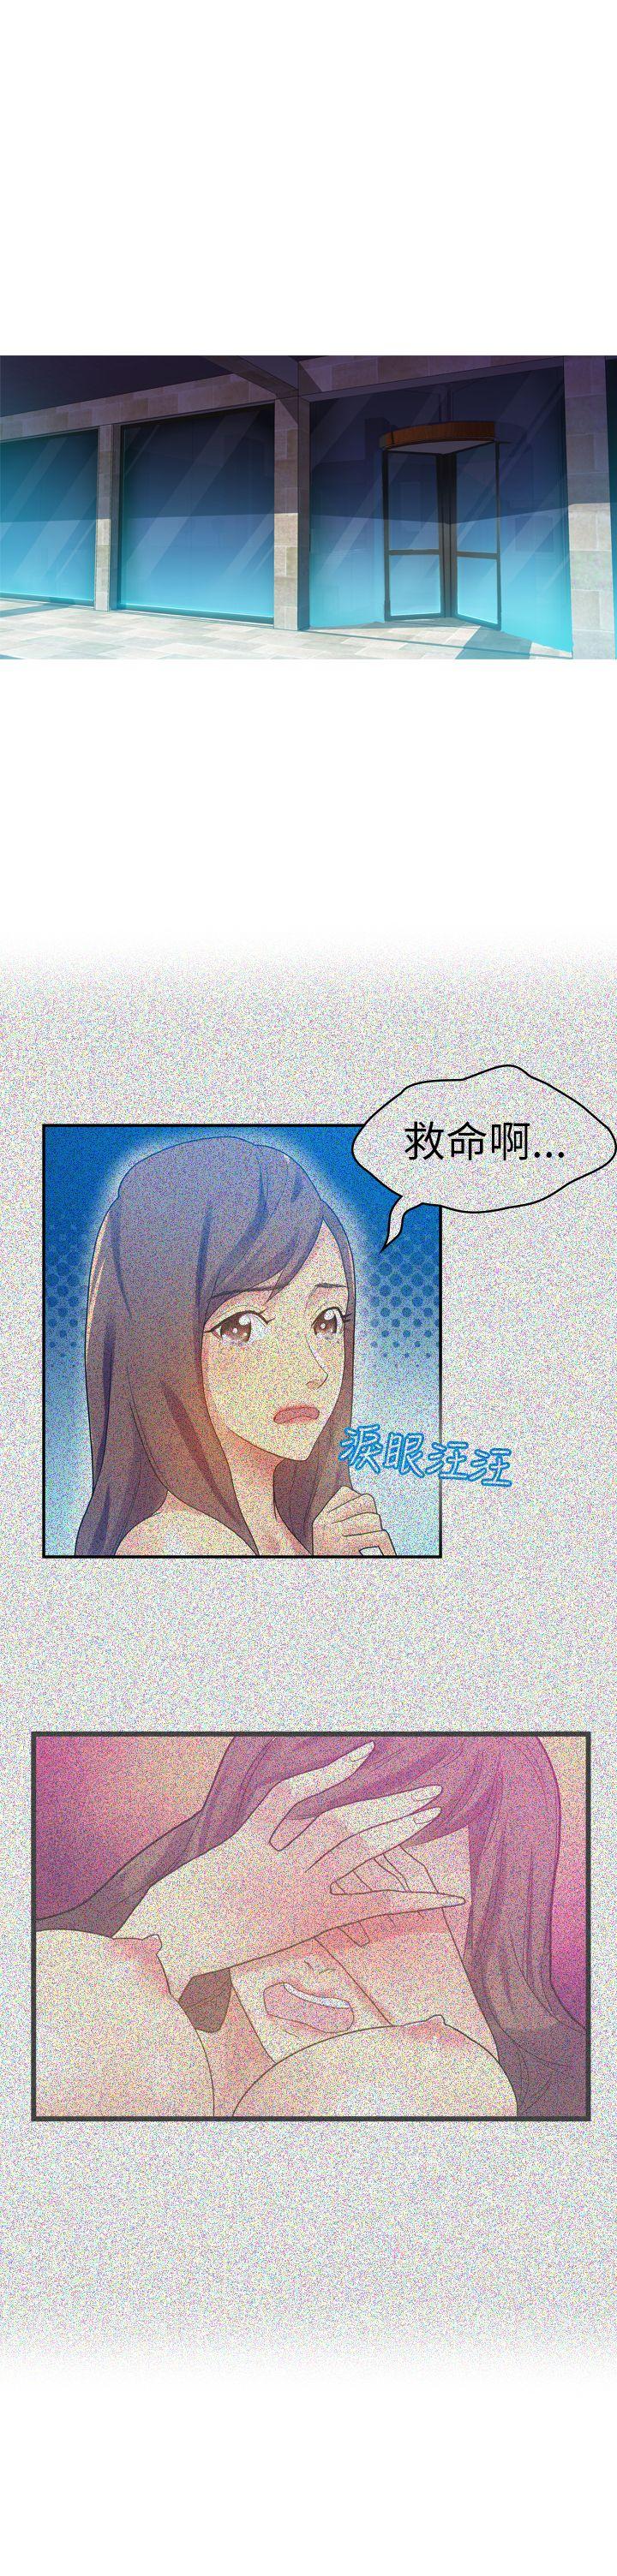 韩国污漫画 幻想中的她(完結) 第10话 1